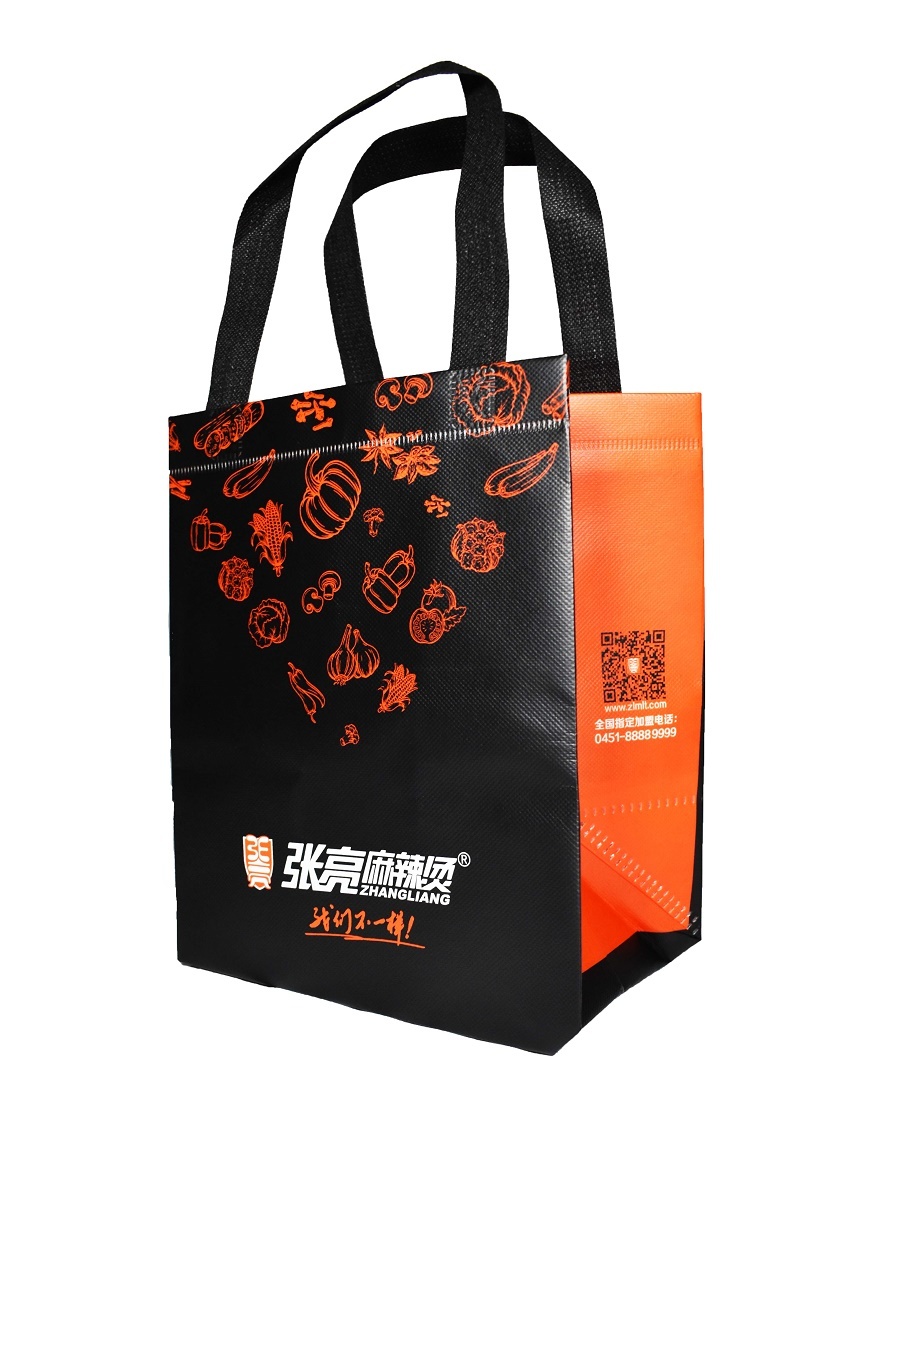 Shiny laminated non-woven shopping bag | Non-woven and non-woven bags |  Shopping bags | Promotional item